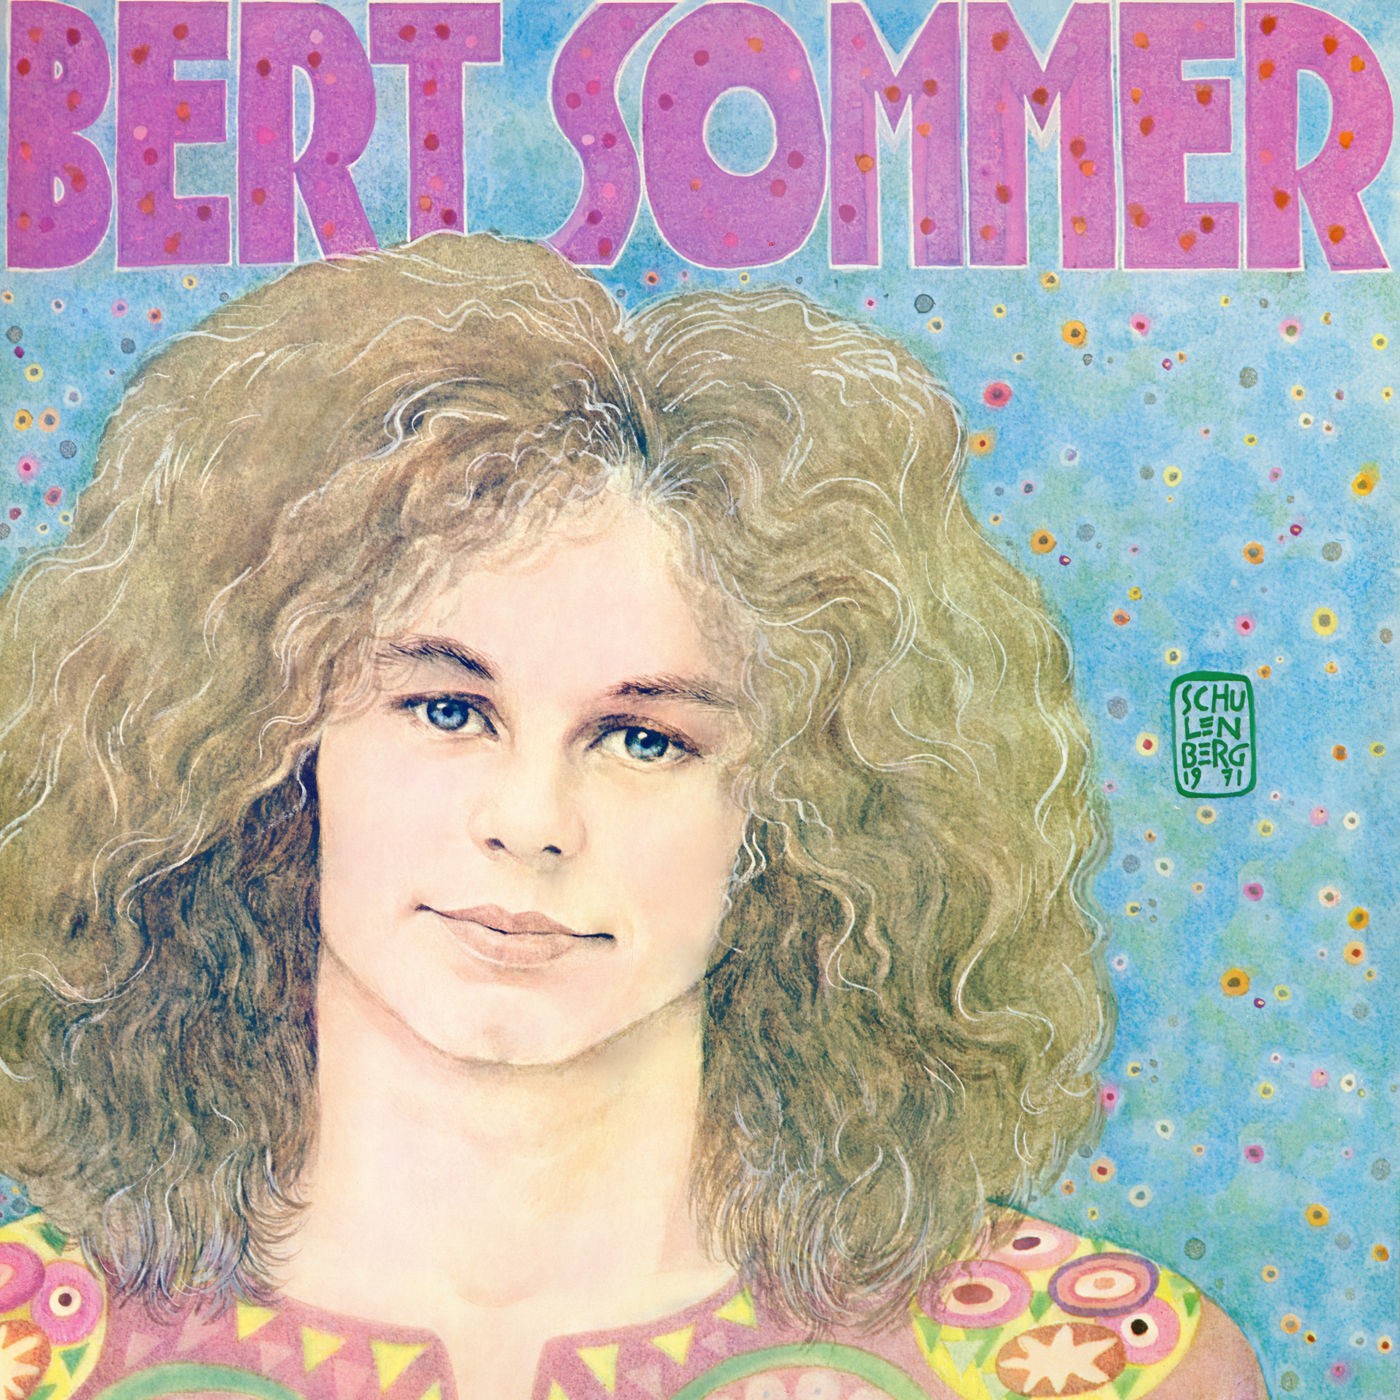 Bert Sommer – Bert Sommer (1971/2021) [FLAC 24bit/192kHz]